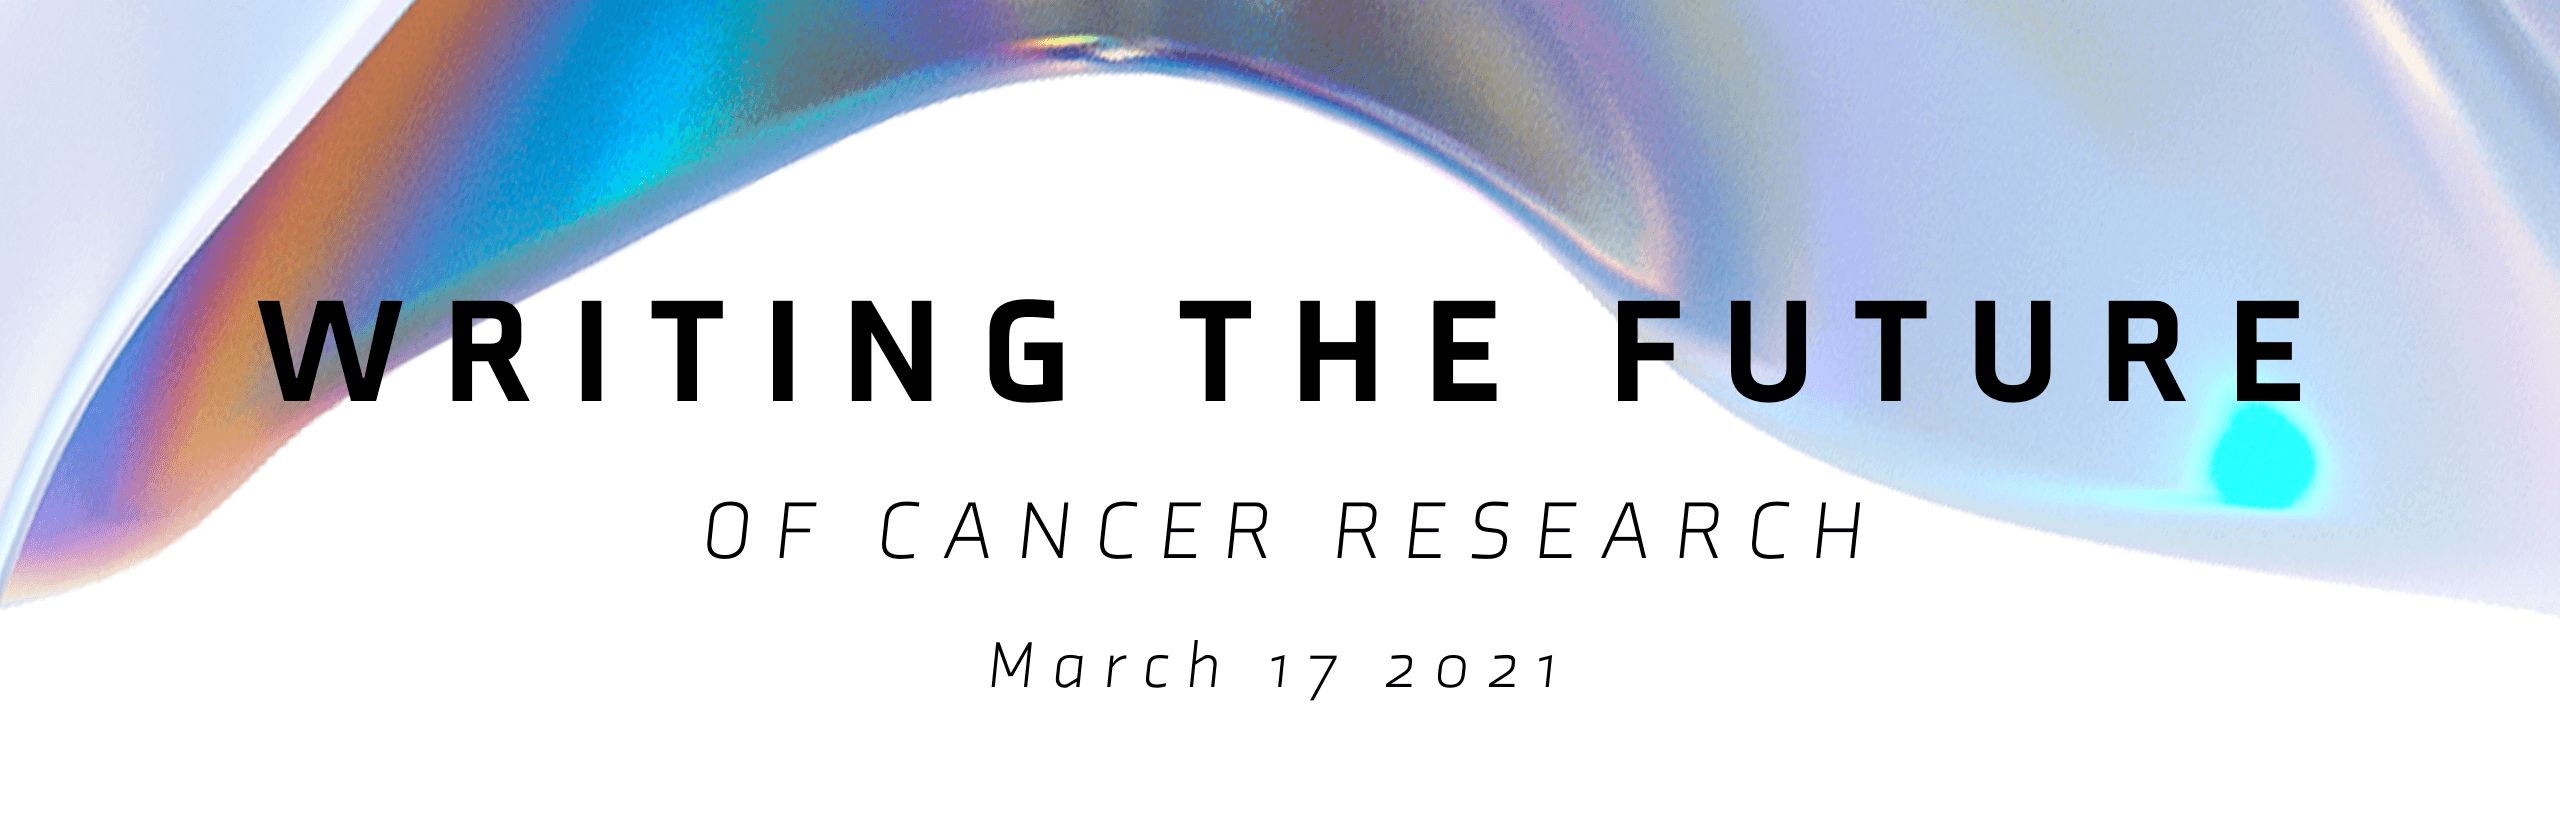 Aperçu du symposium en direct : Écrire le futur de la recherche sur le cancer